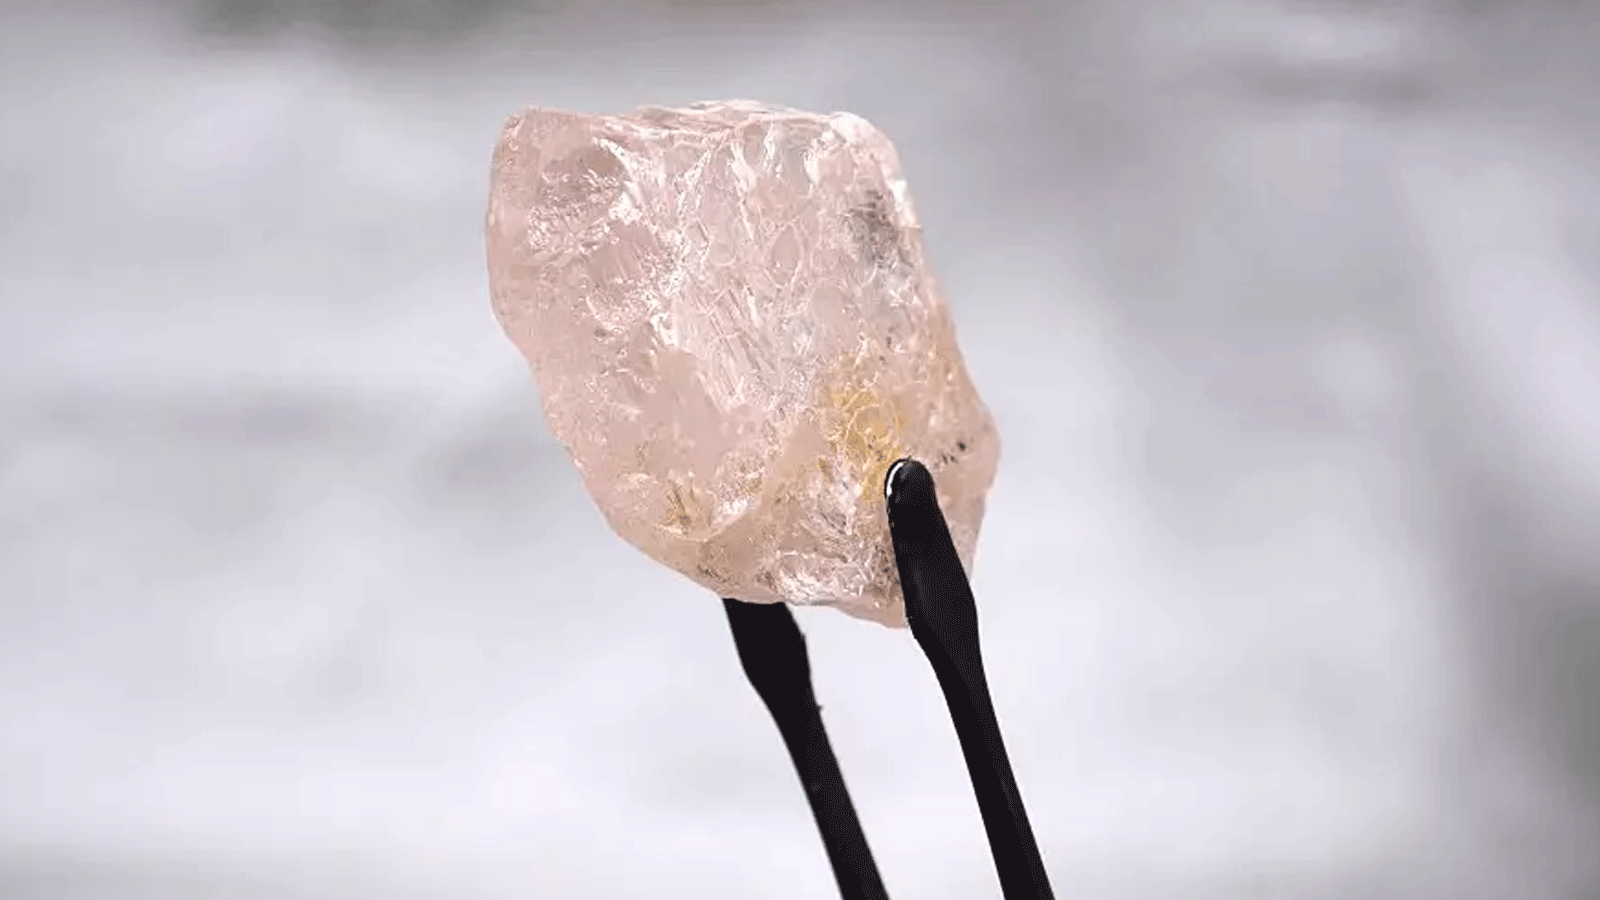 تُظهر هذه الصورة غير المؤرخة التي أصدرتها شركة Lucapa Diamond Company Limited في 27 يوليو 2022 ماسة وردية بوزن 170 قيراطًا - يطلق عليها اسم Lulo Rose - تم اكتشافها في أنغولا